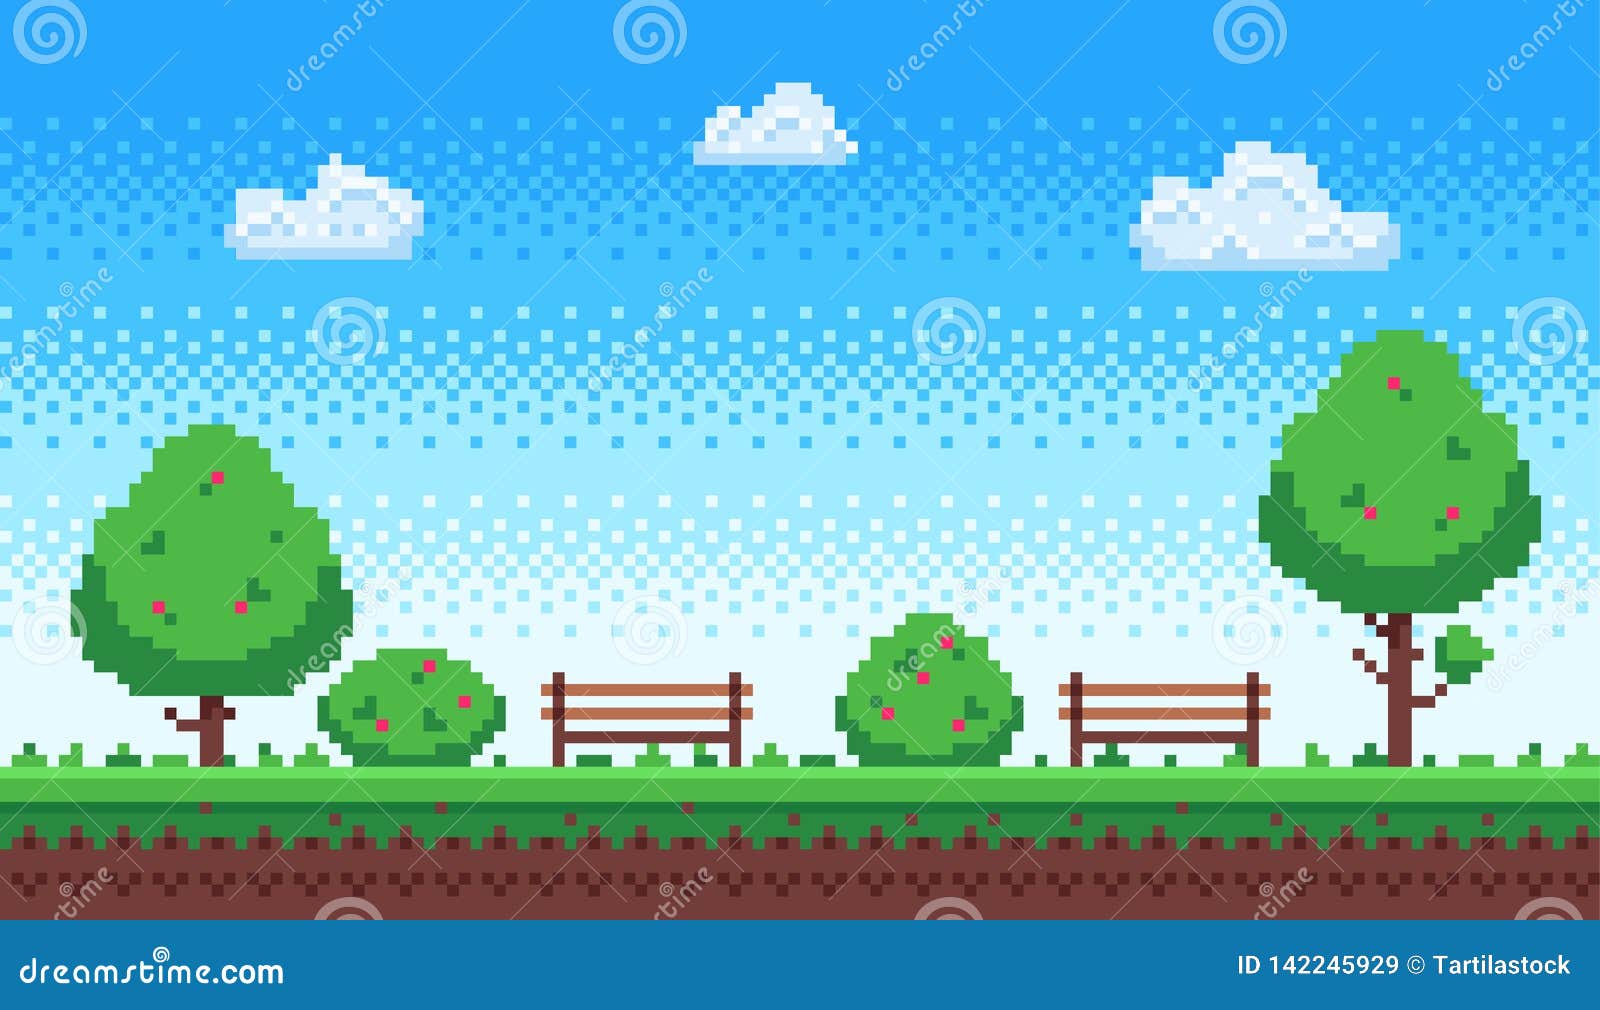 Hình nền Pixel Park game retro 8 bit màu xanh da trời sẽ khiến bạn thấy như đang trở về tuổi thơ cùng với những trò chơi đầy kỷ niệm. Màu sắc tươi sáng và hình ảnh độc đáo khiến cho nó trở thành một trong những hình nền đẹp nhất mà bạn từng thấy. Hãy tải xuống để trải nghiệm ngay hôm nay.